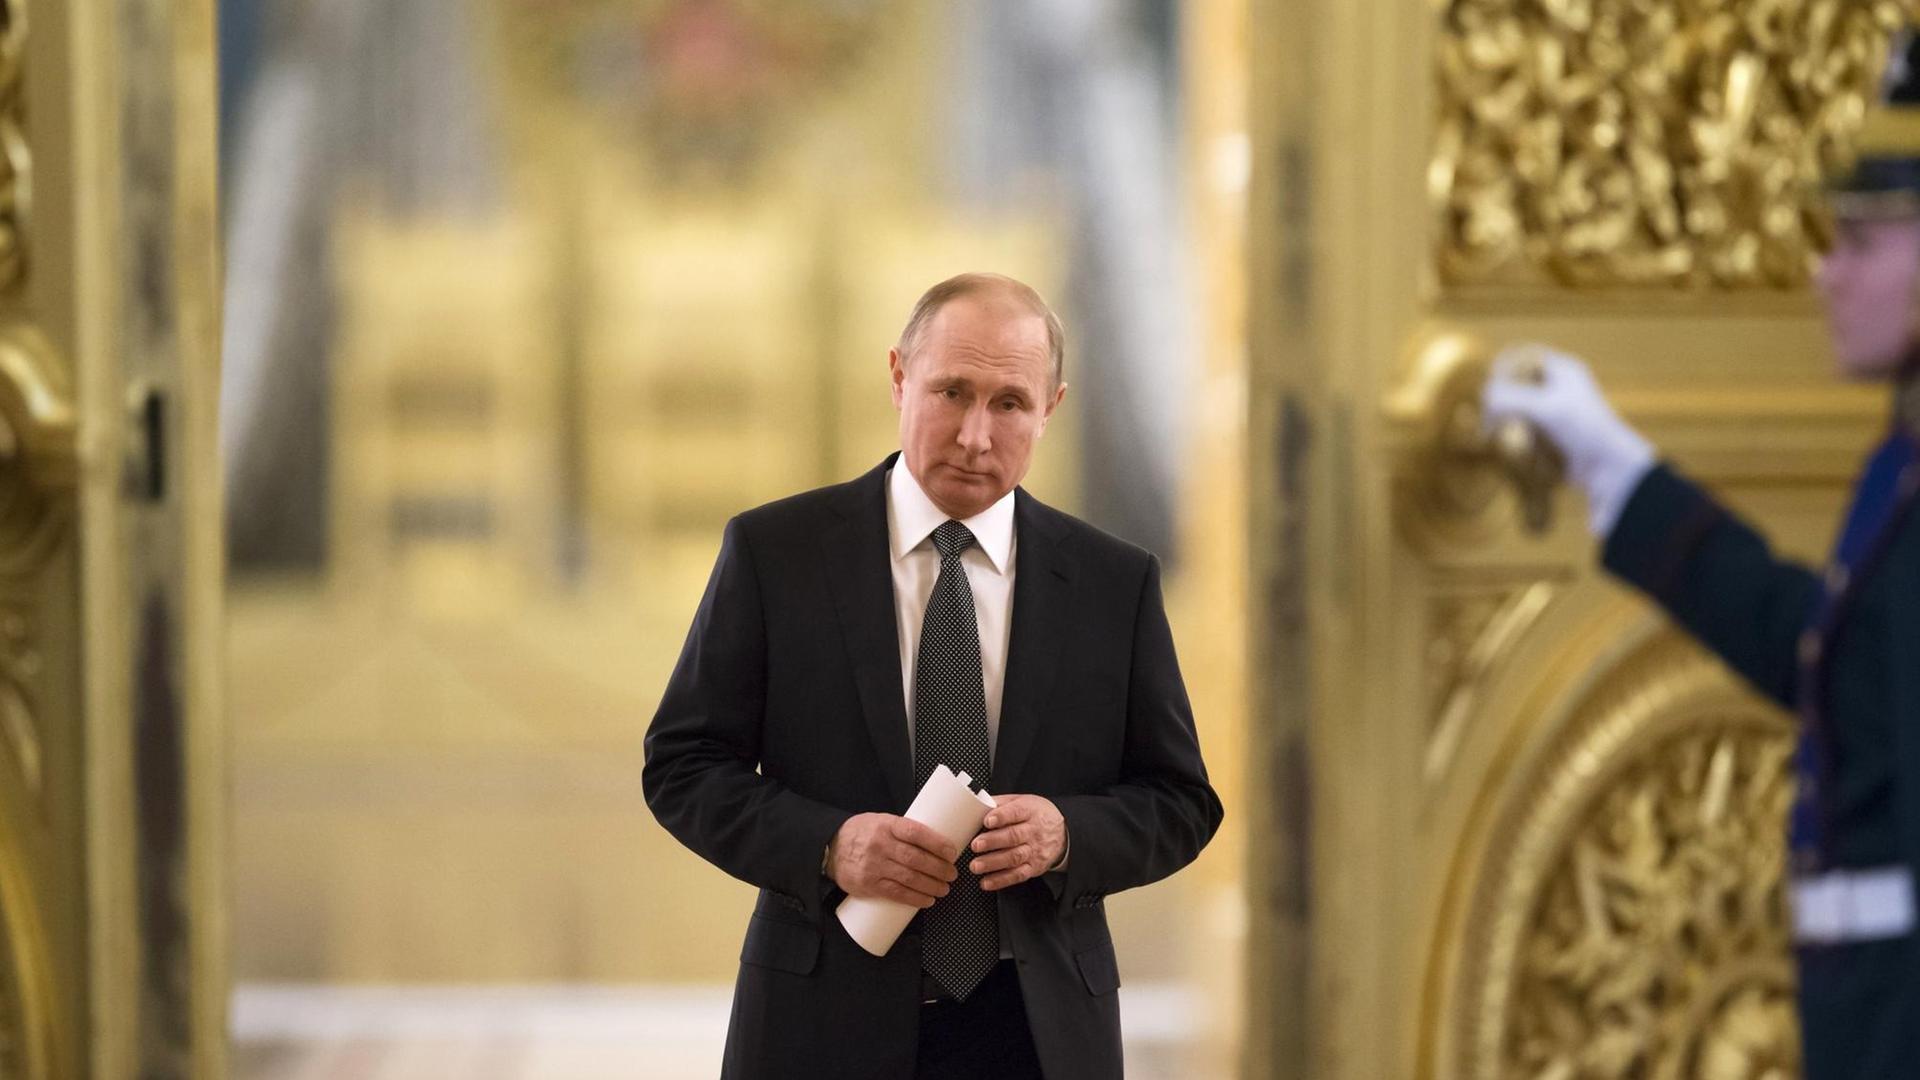 Das Bild zeigt Russlands Präsident Putin im Kreml. Er schreitet durch die Gänge und hält ein zusammengerolltes Stück Papier in seinen Händen.